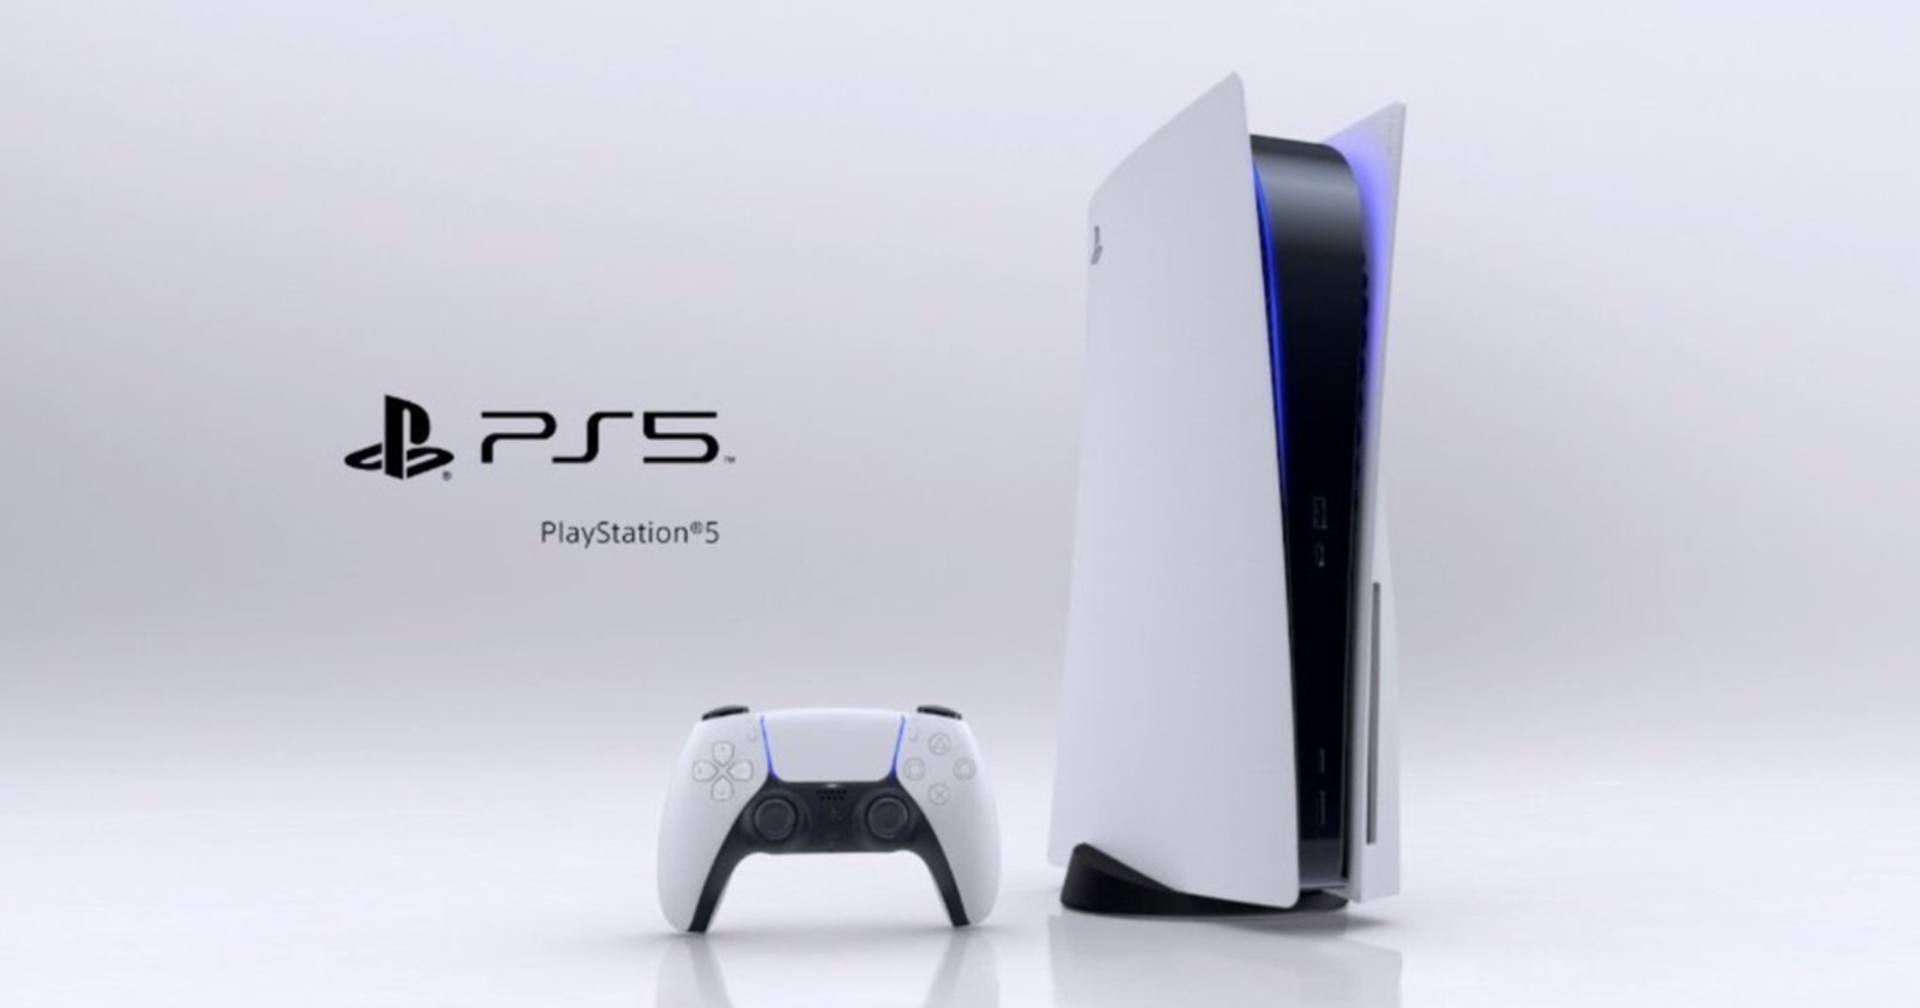 ยังคงขายดี Sony บอกการขึ้นราคา PS5 ไม่กระทบยอดขาย